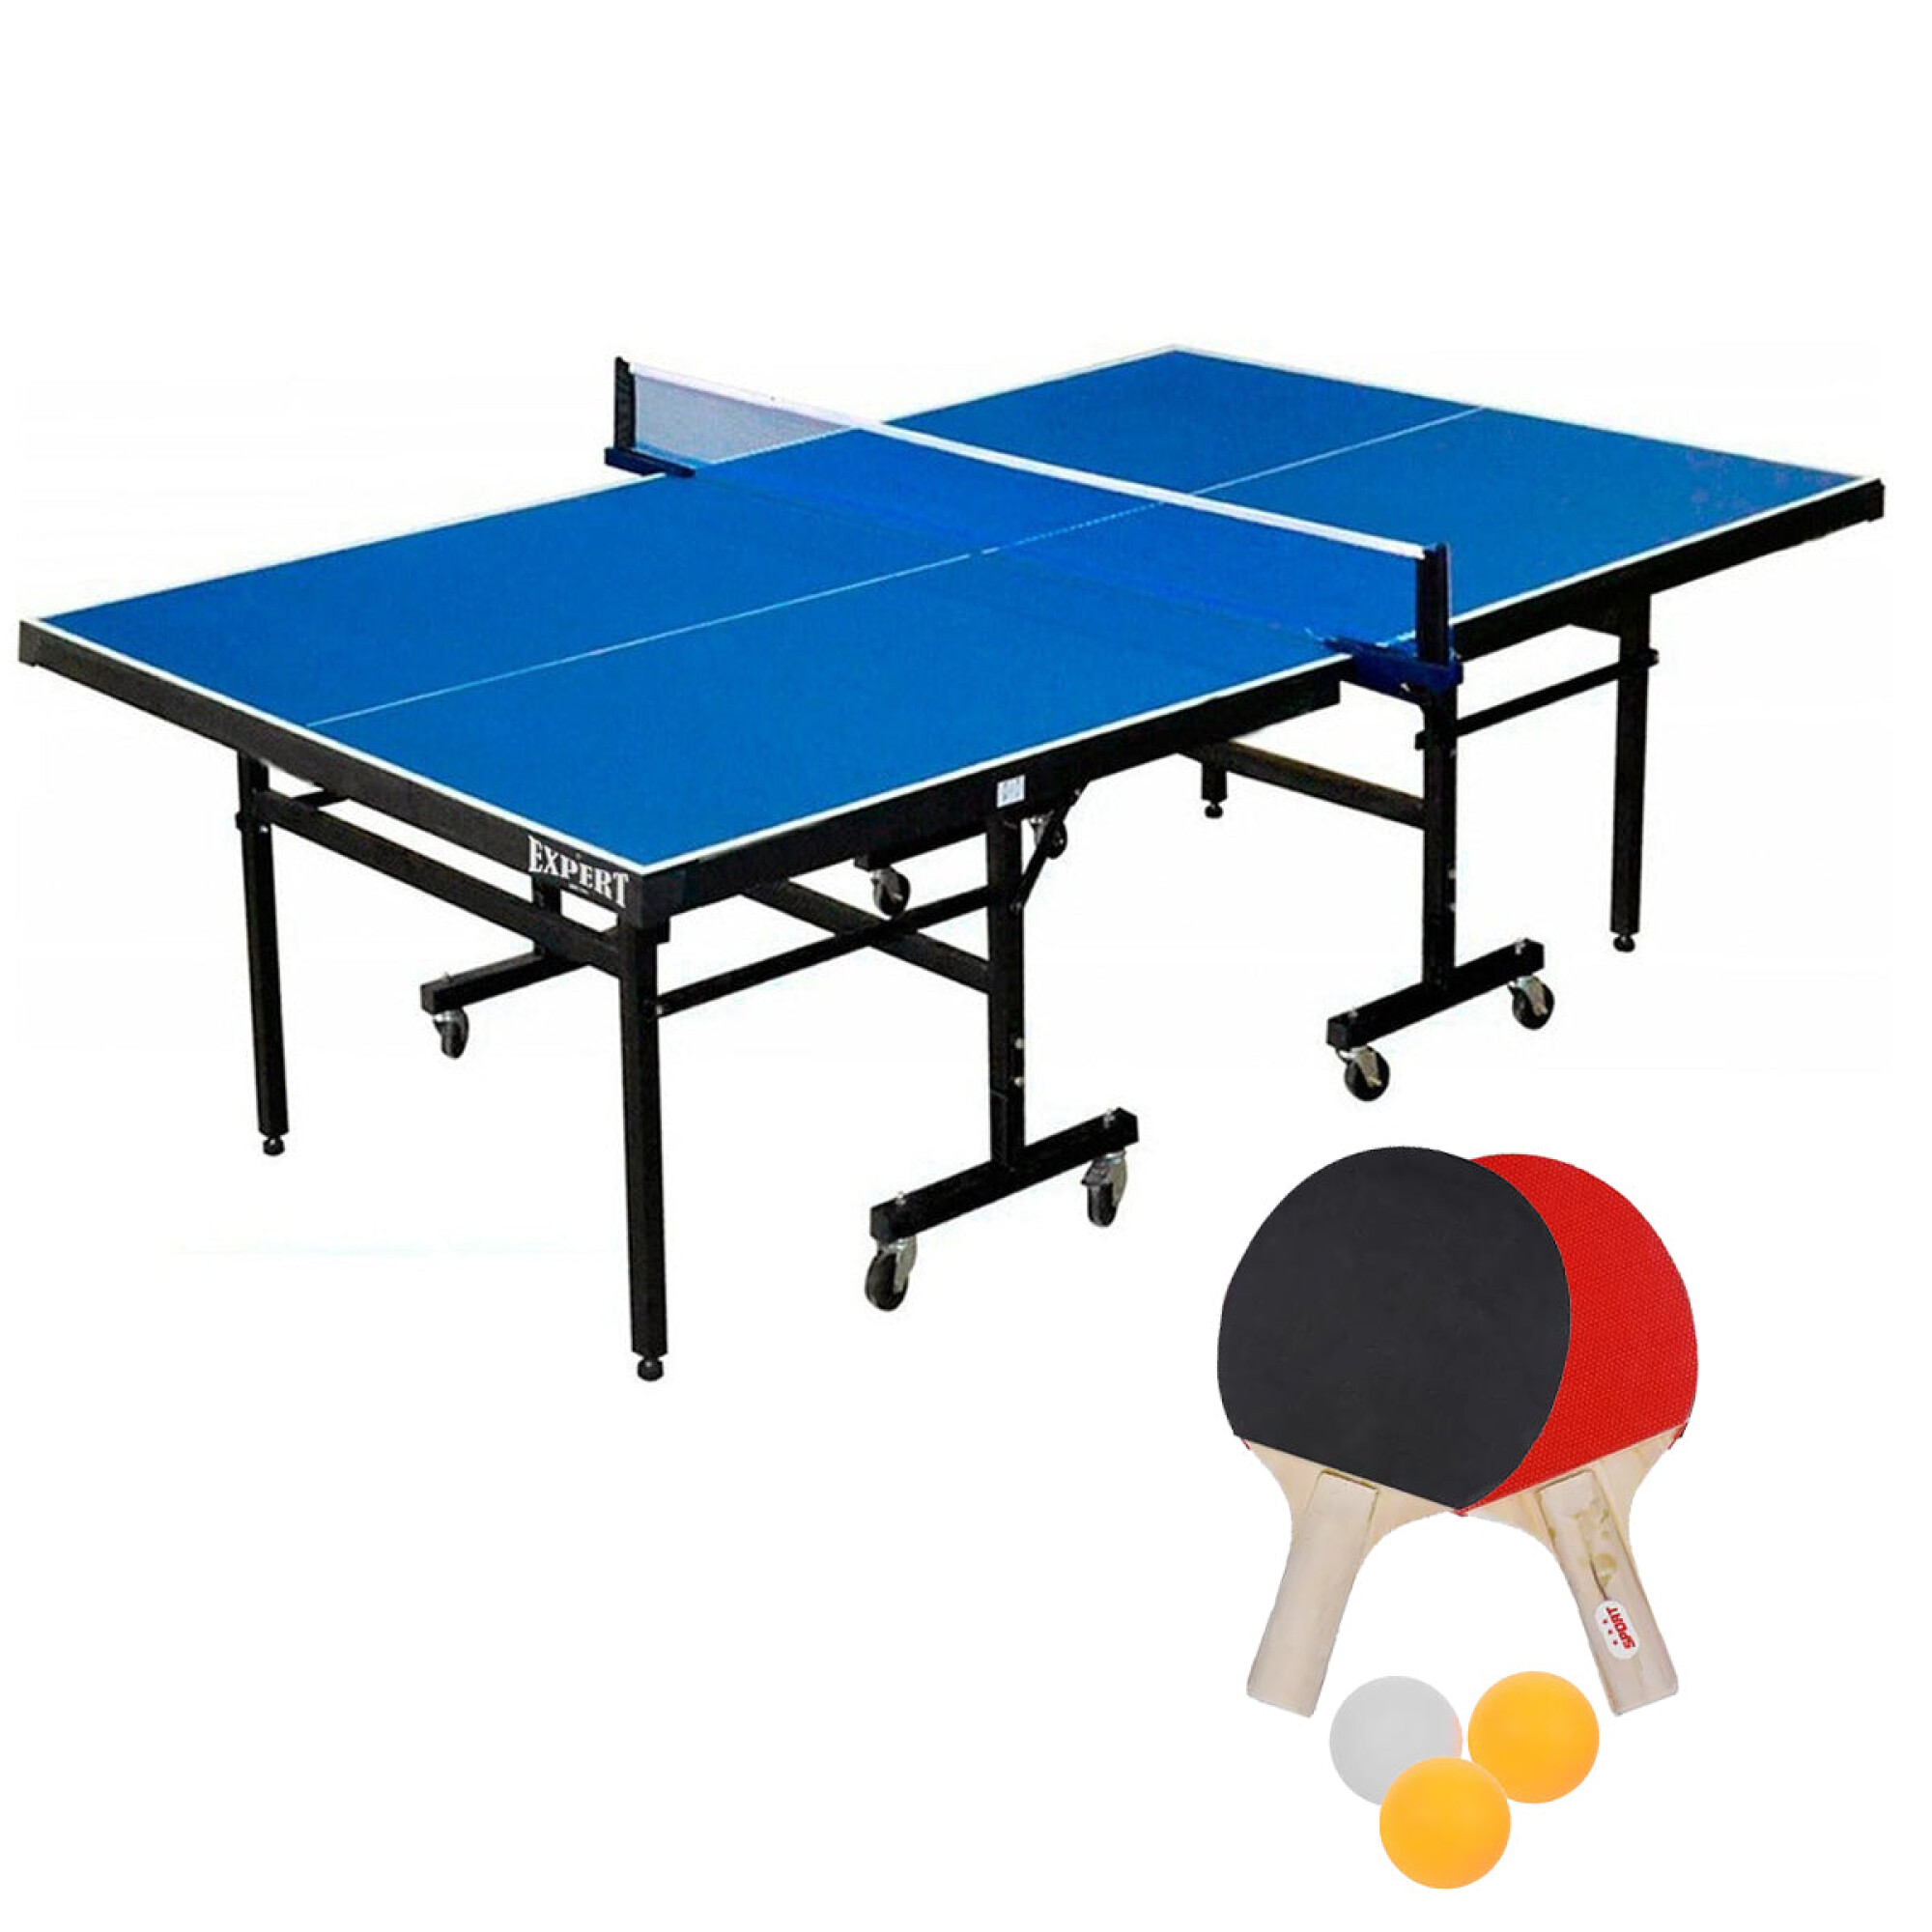 Hathaway Reflex - Mesa de ping pong de 6 pies con red de fijación rápida,  tamaño mediano y plegable para espacios pequeños, hecha de madera de